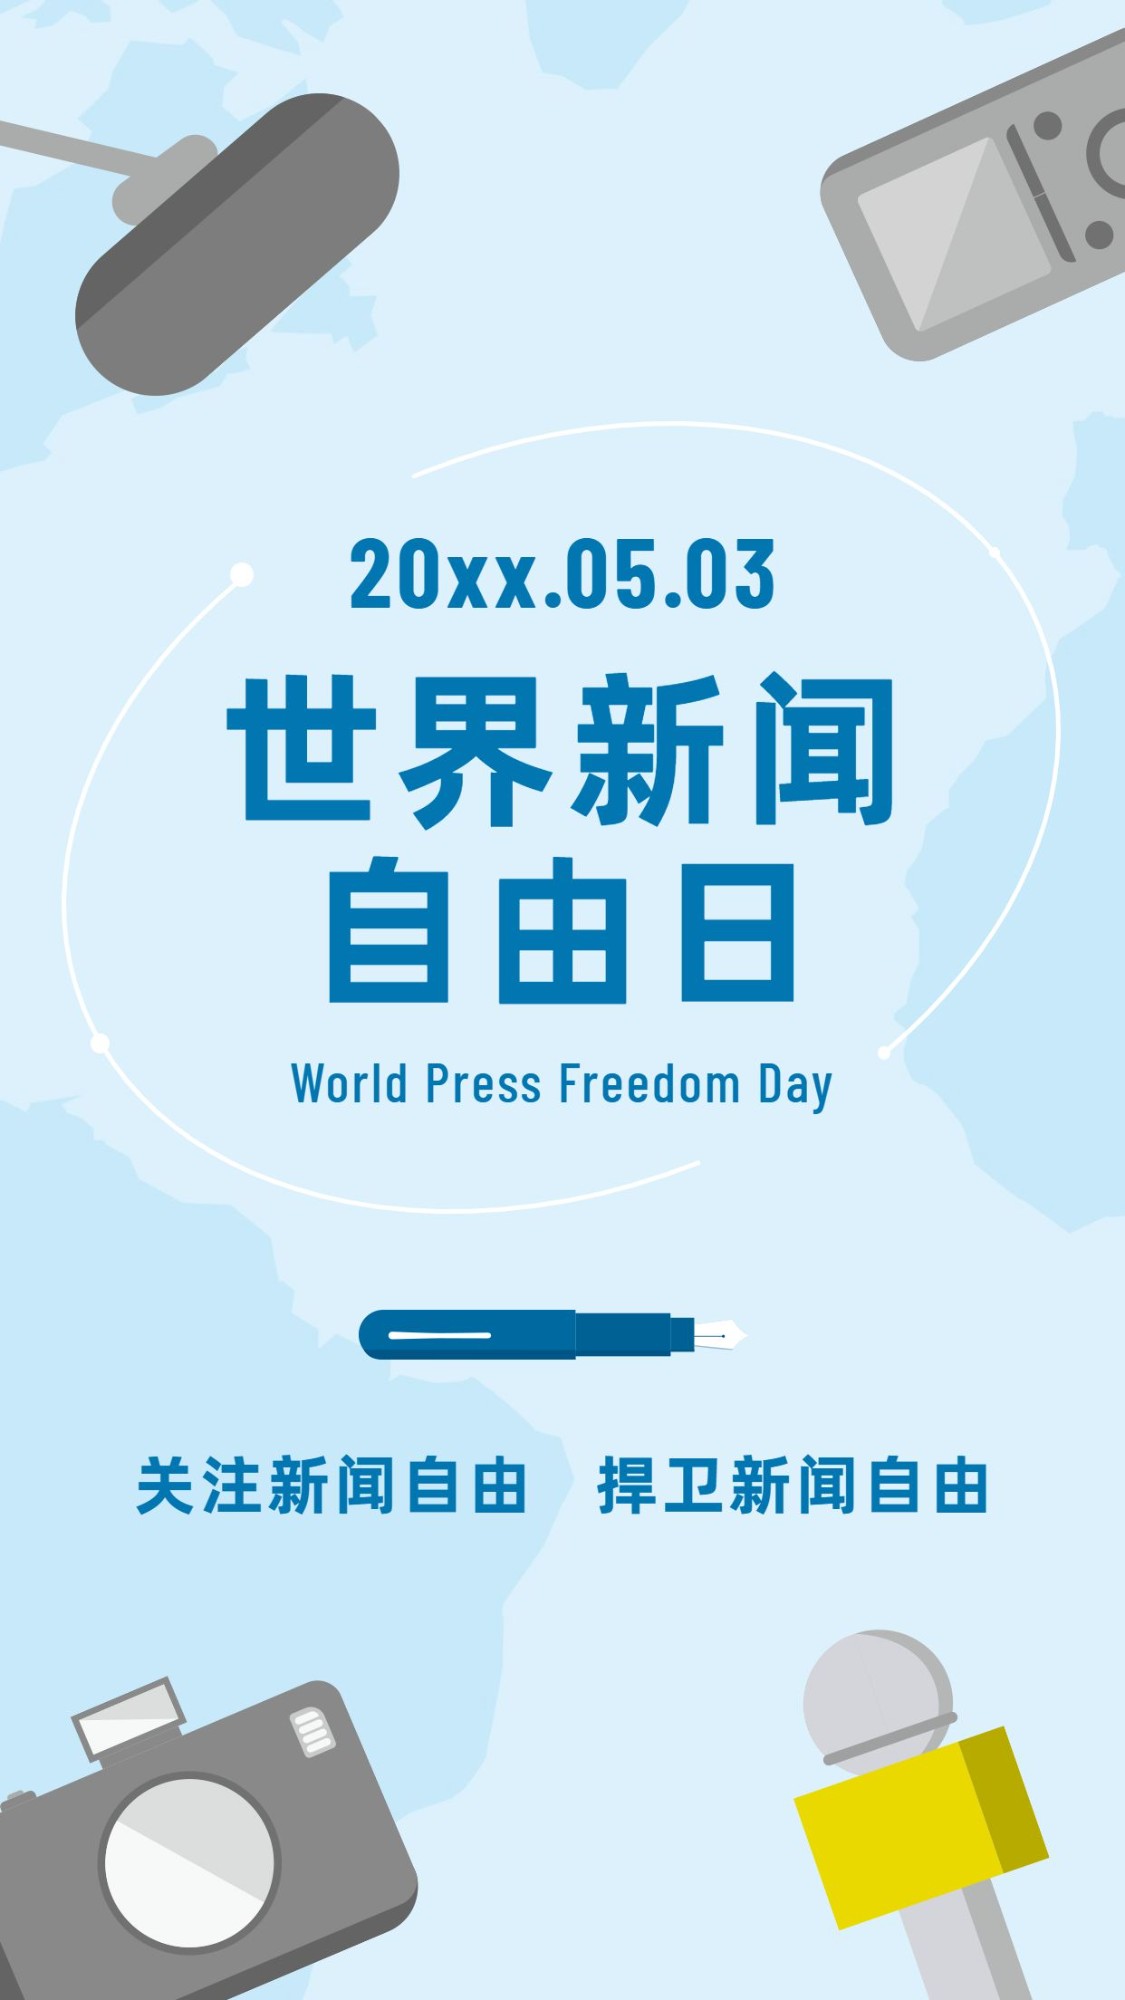 世界新闻自由日节日宣传手绘手机海报